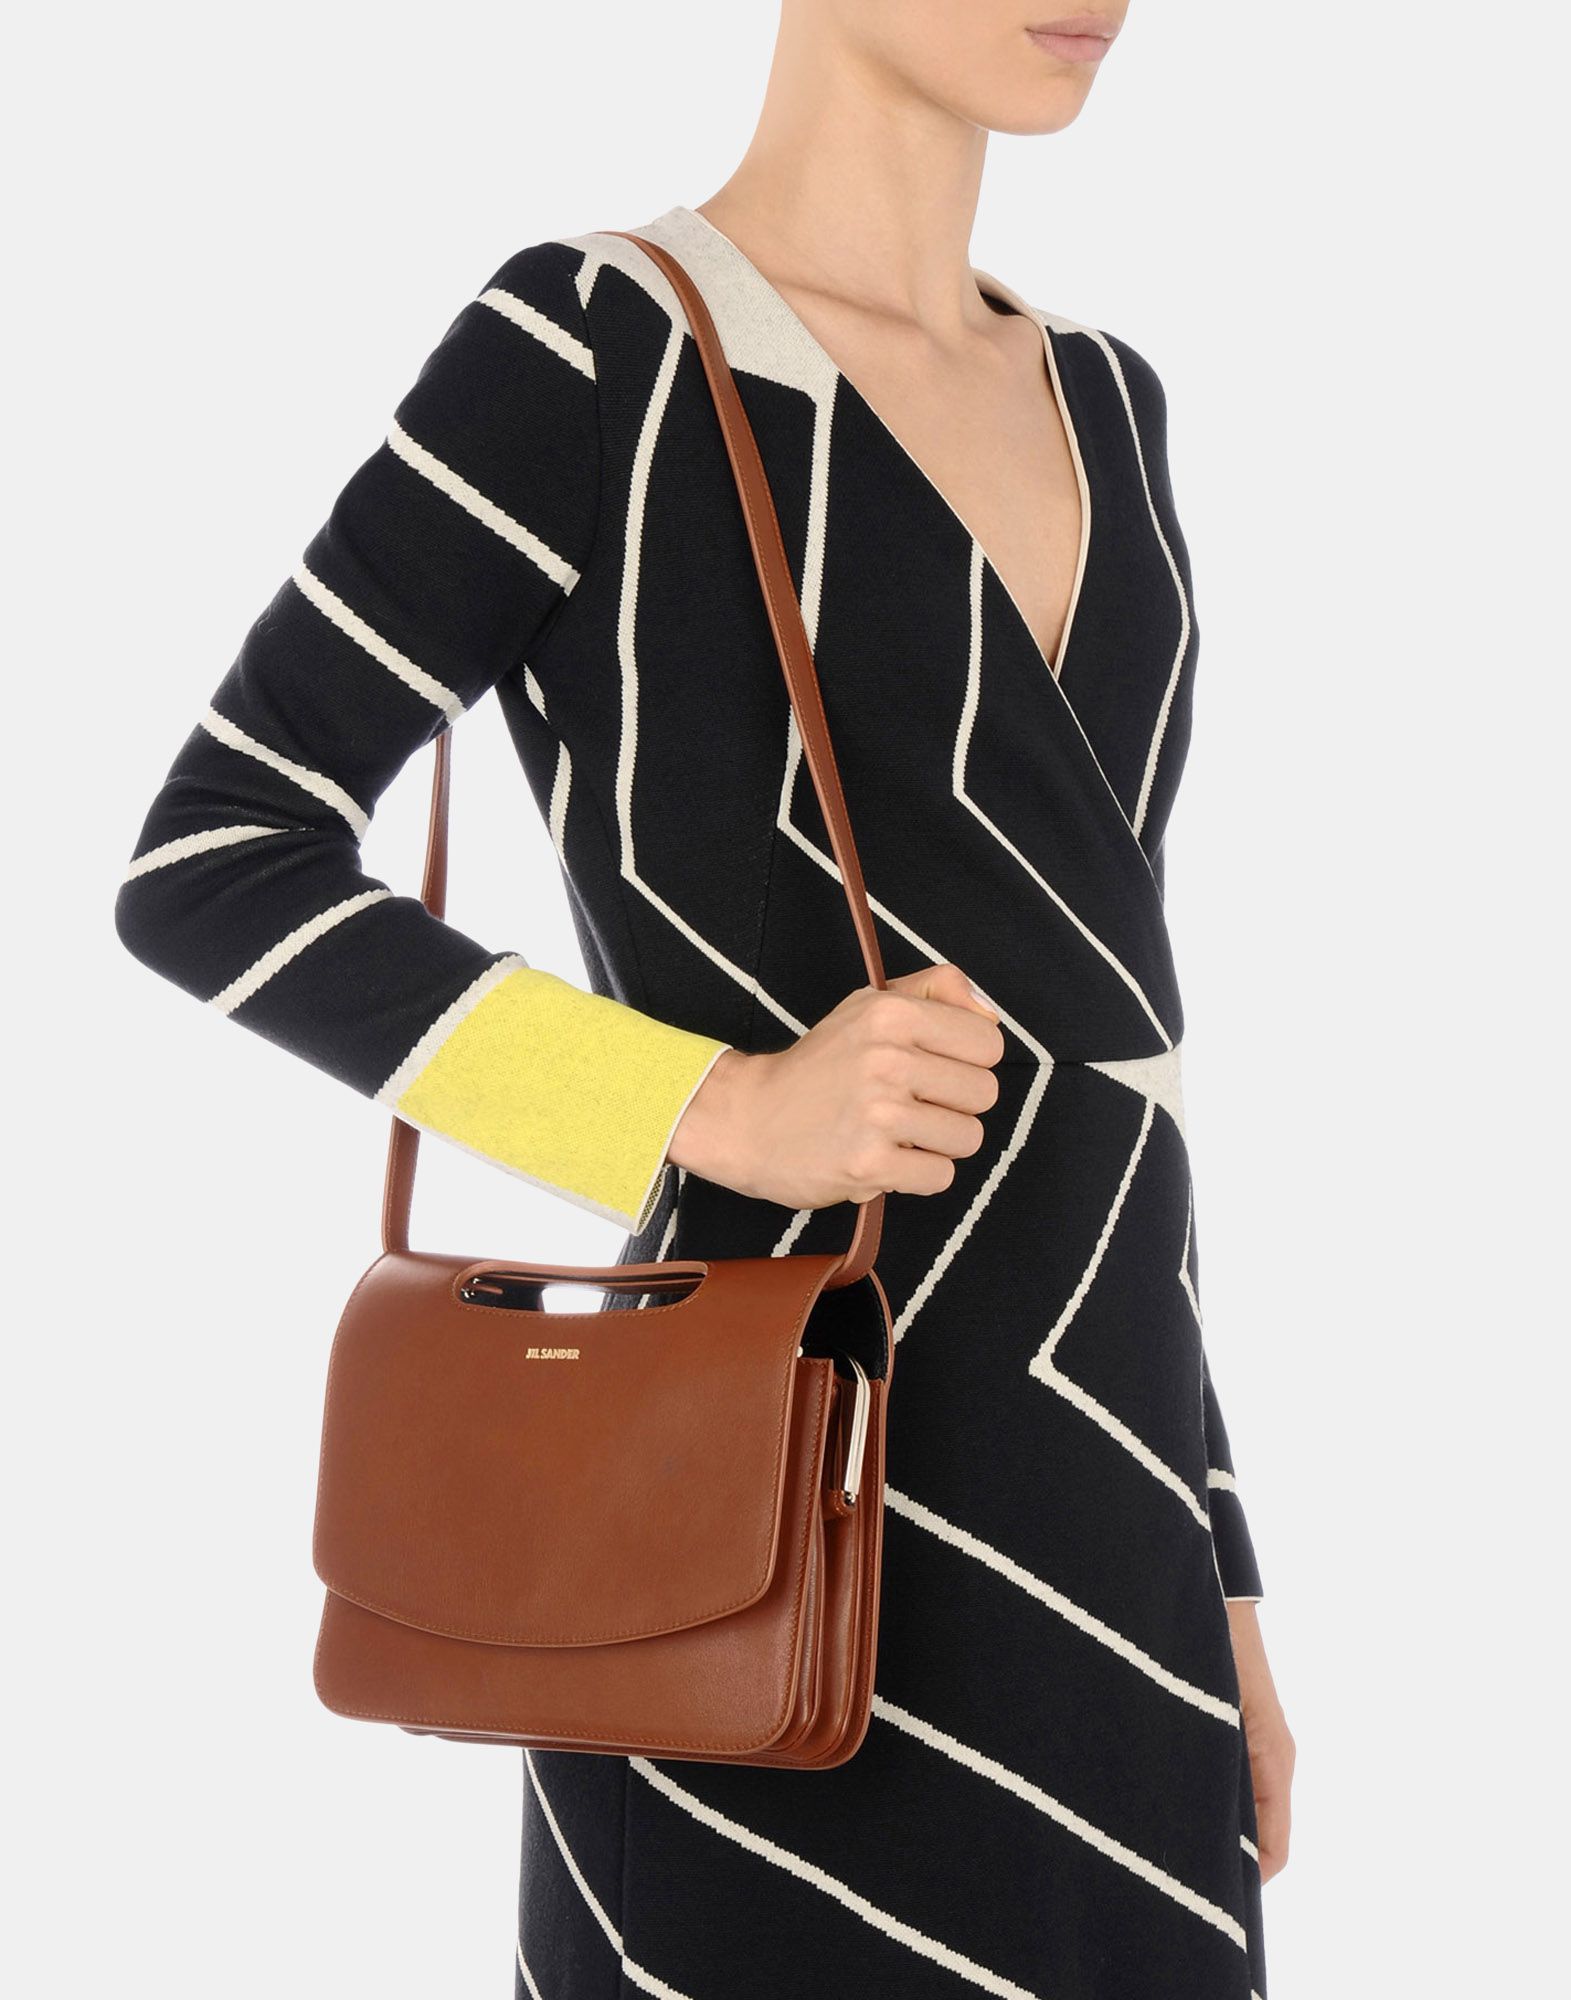 Crossbody bag Women - Bags Women on Jil Sander Online Store